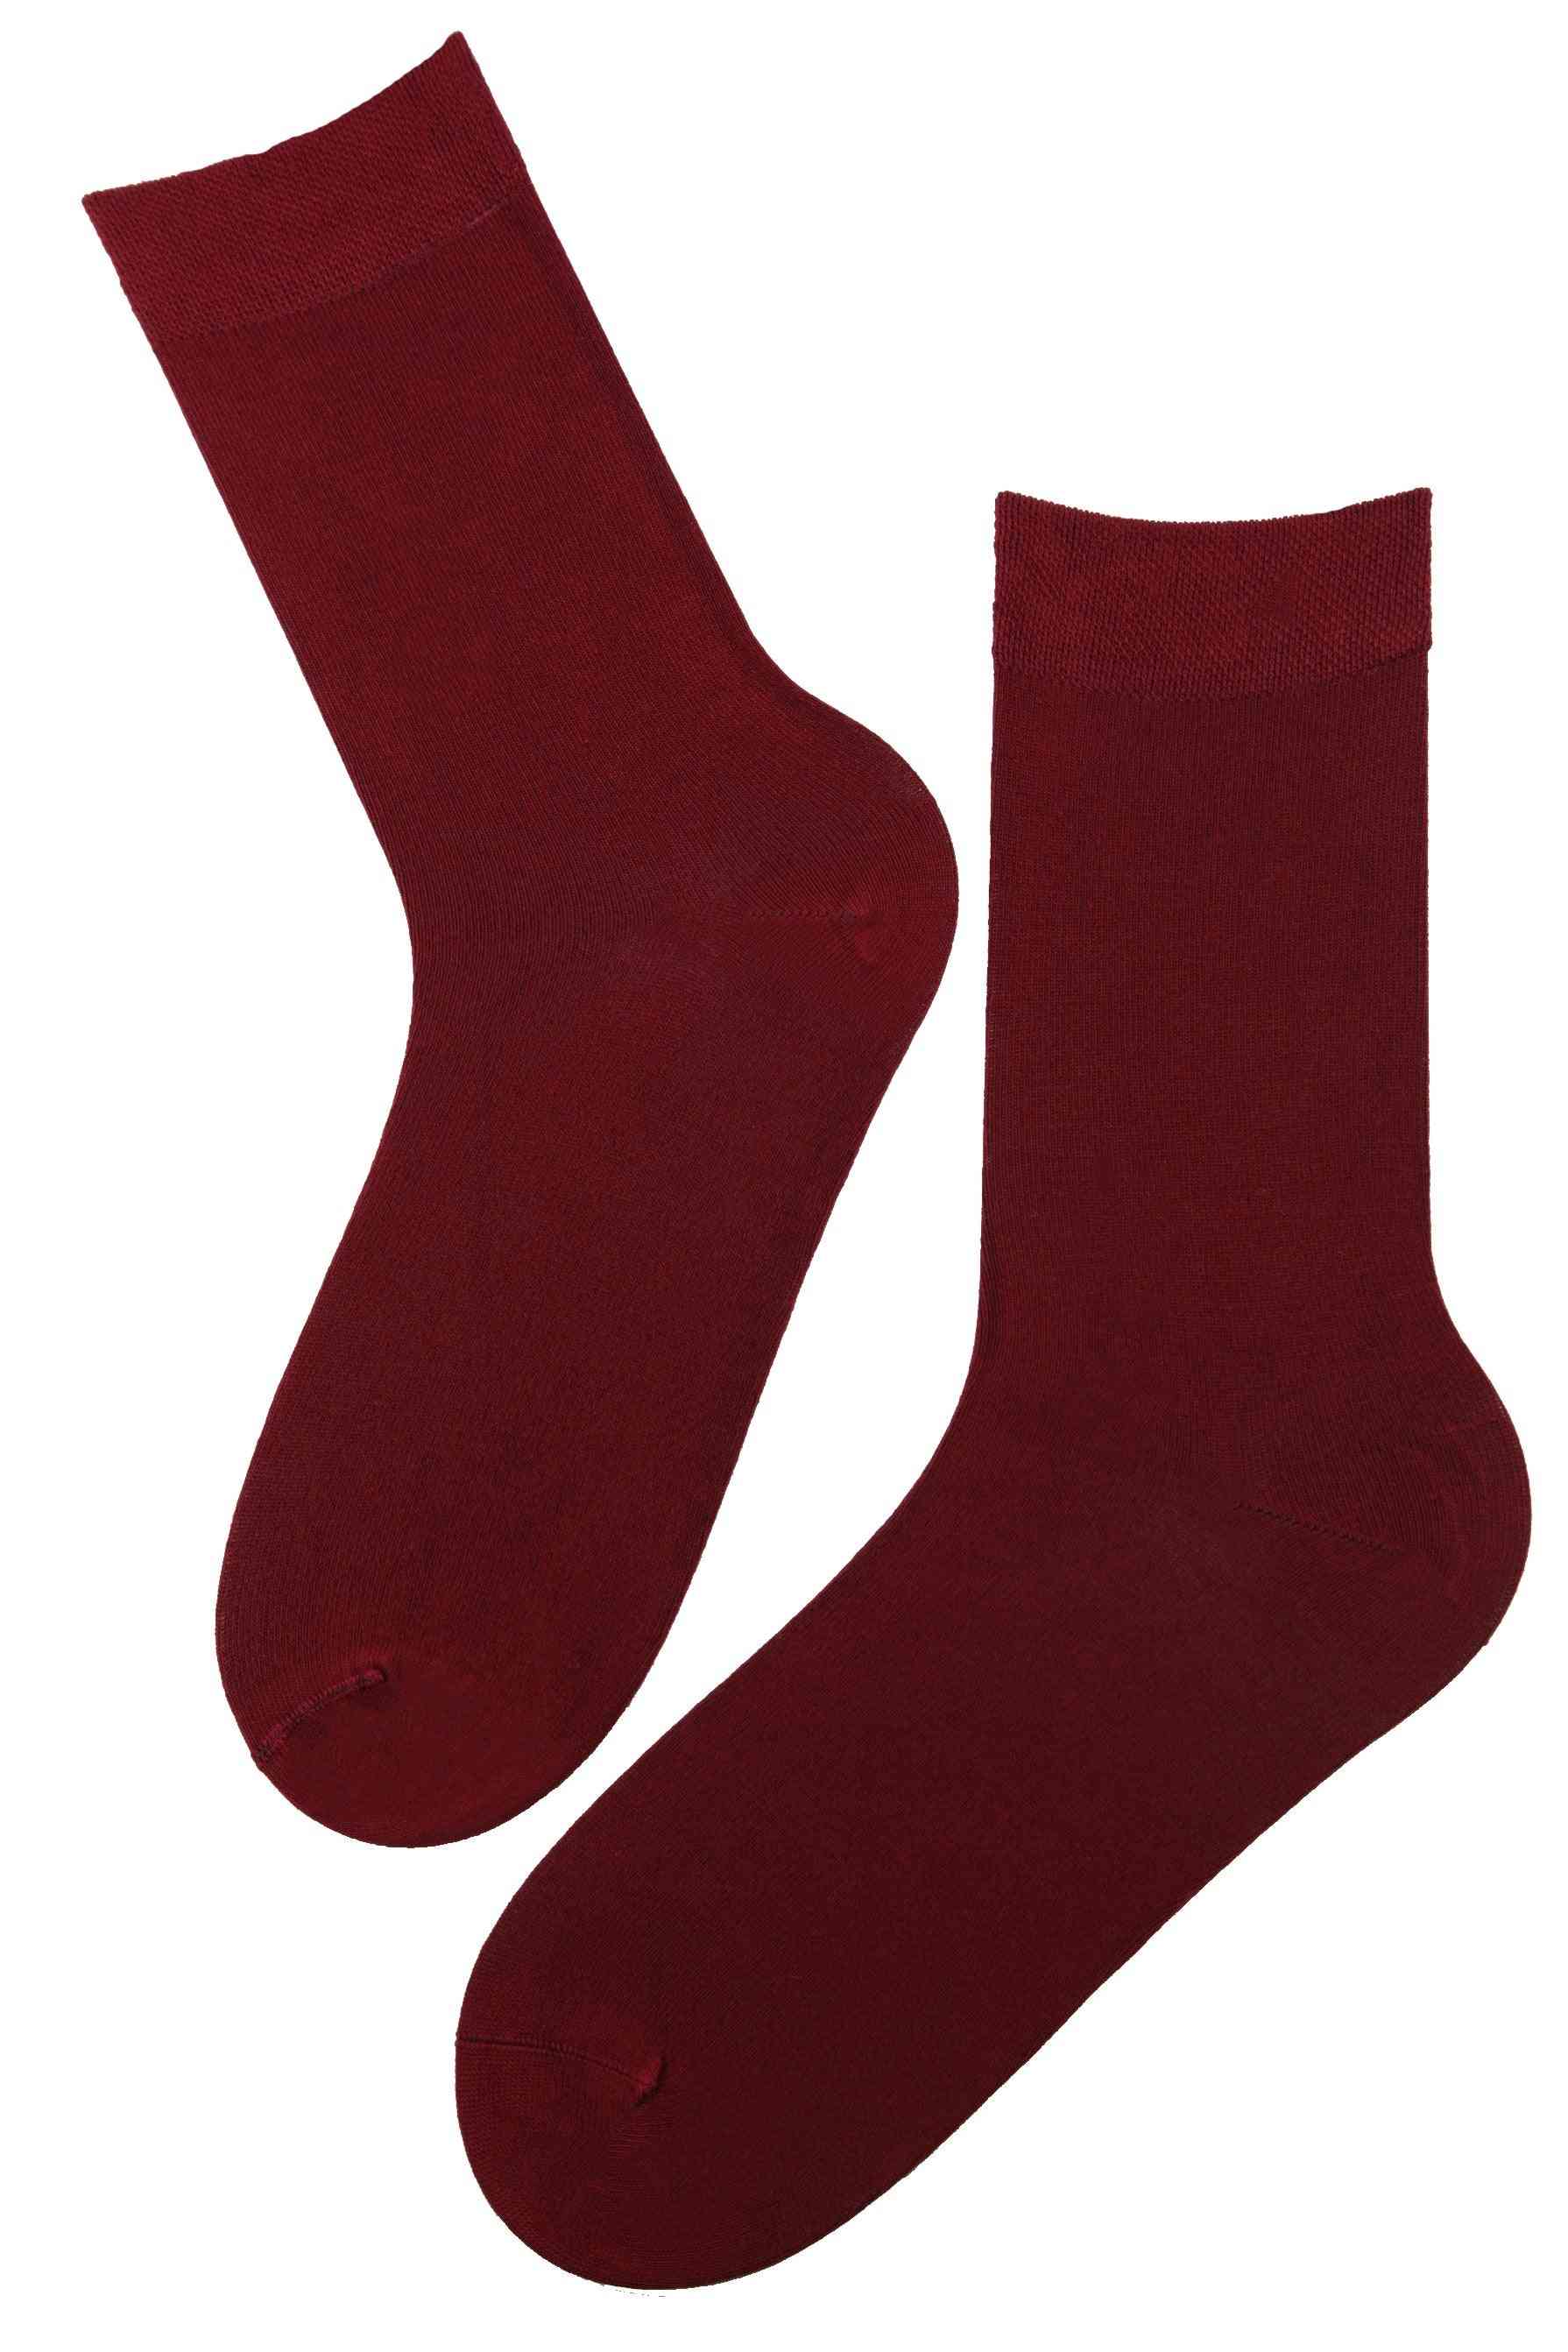 Viskose sokker til kvinder